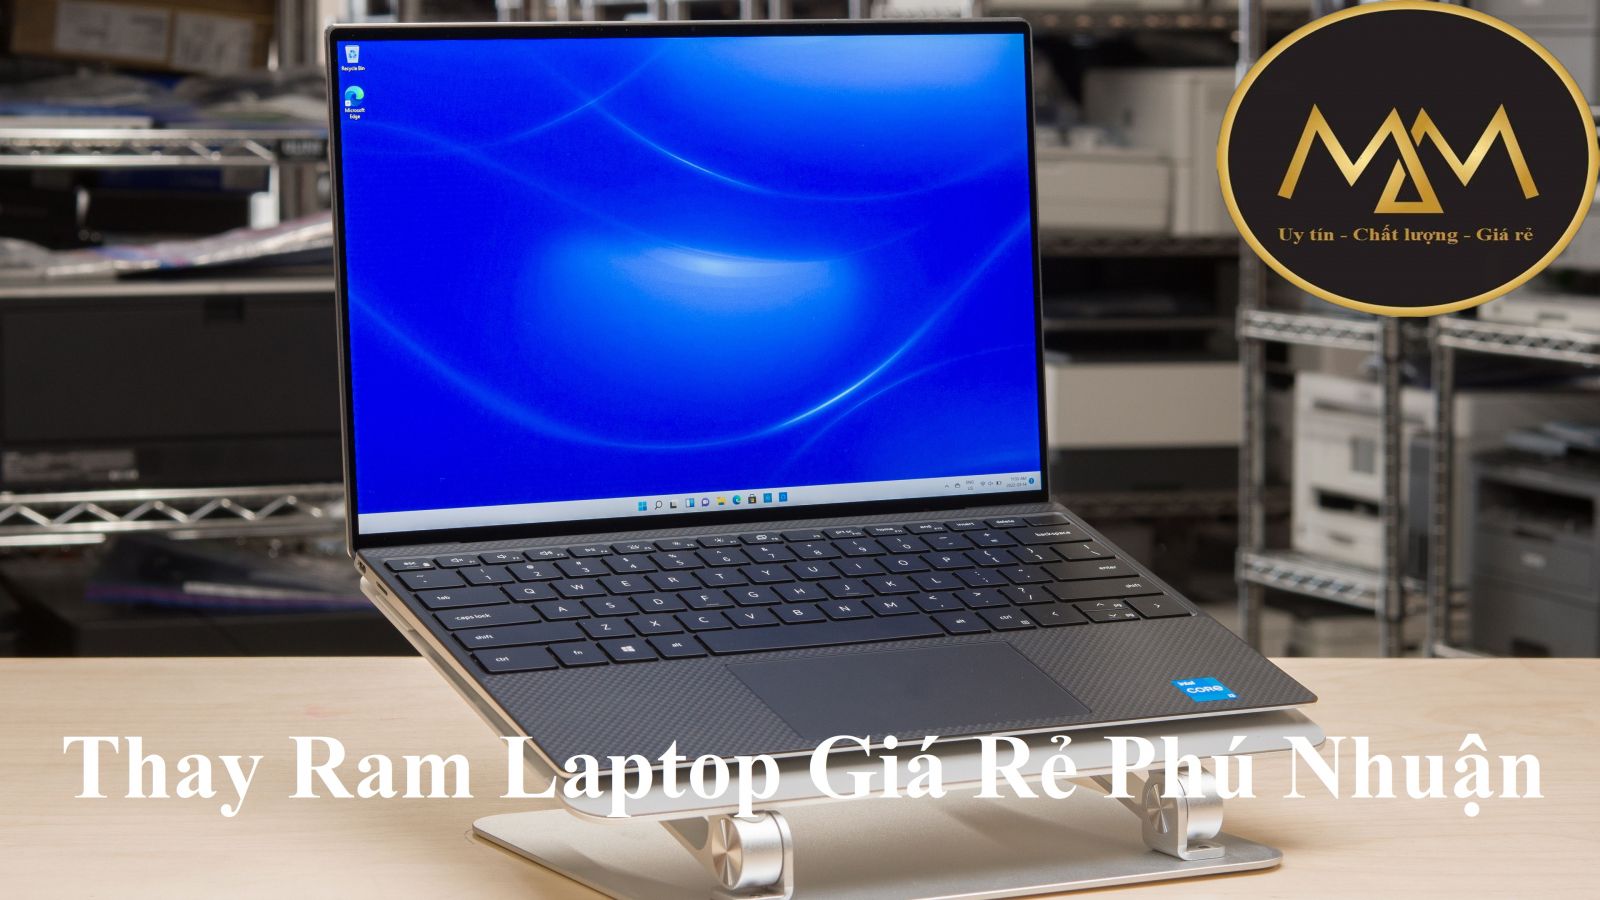 Thay Ram laptop giá rẻ Phú Nhuận